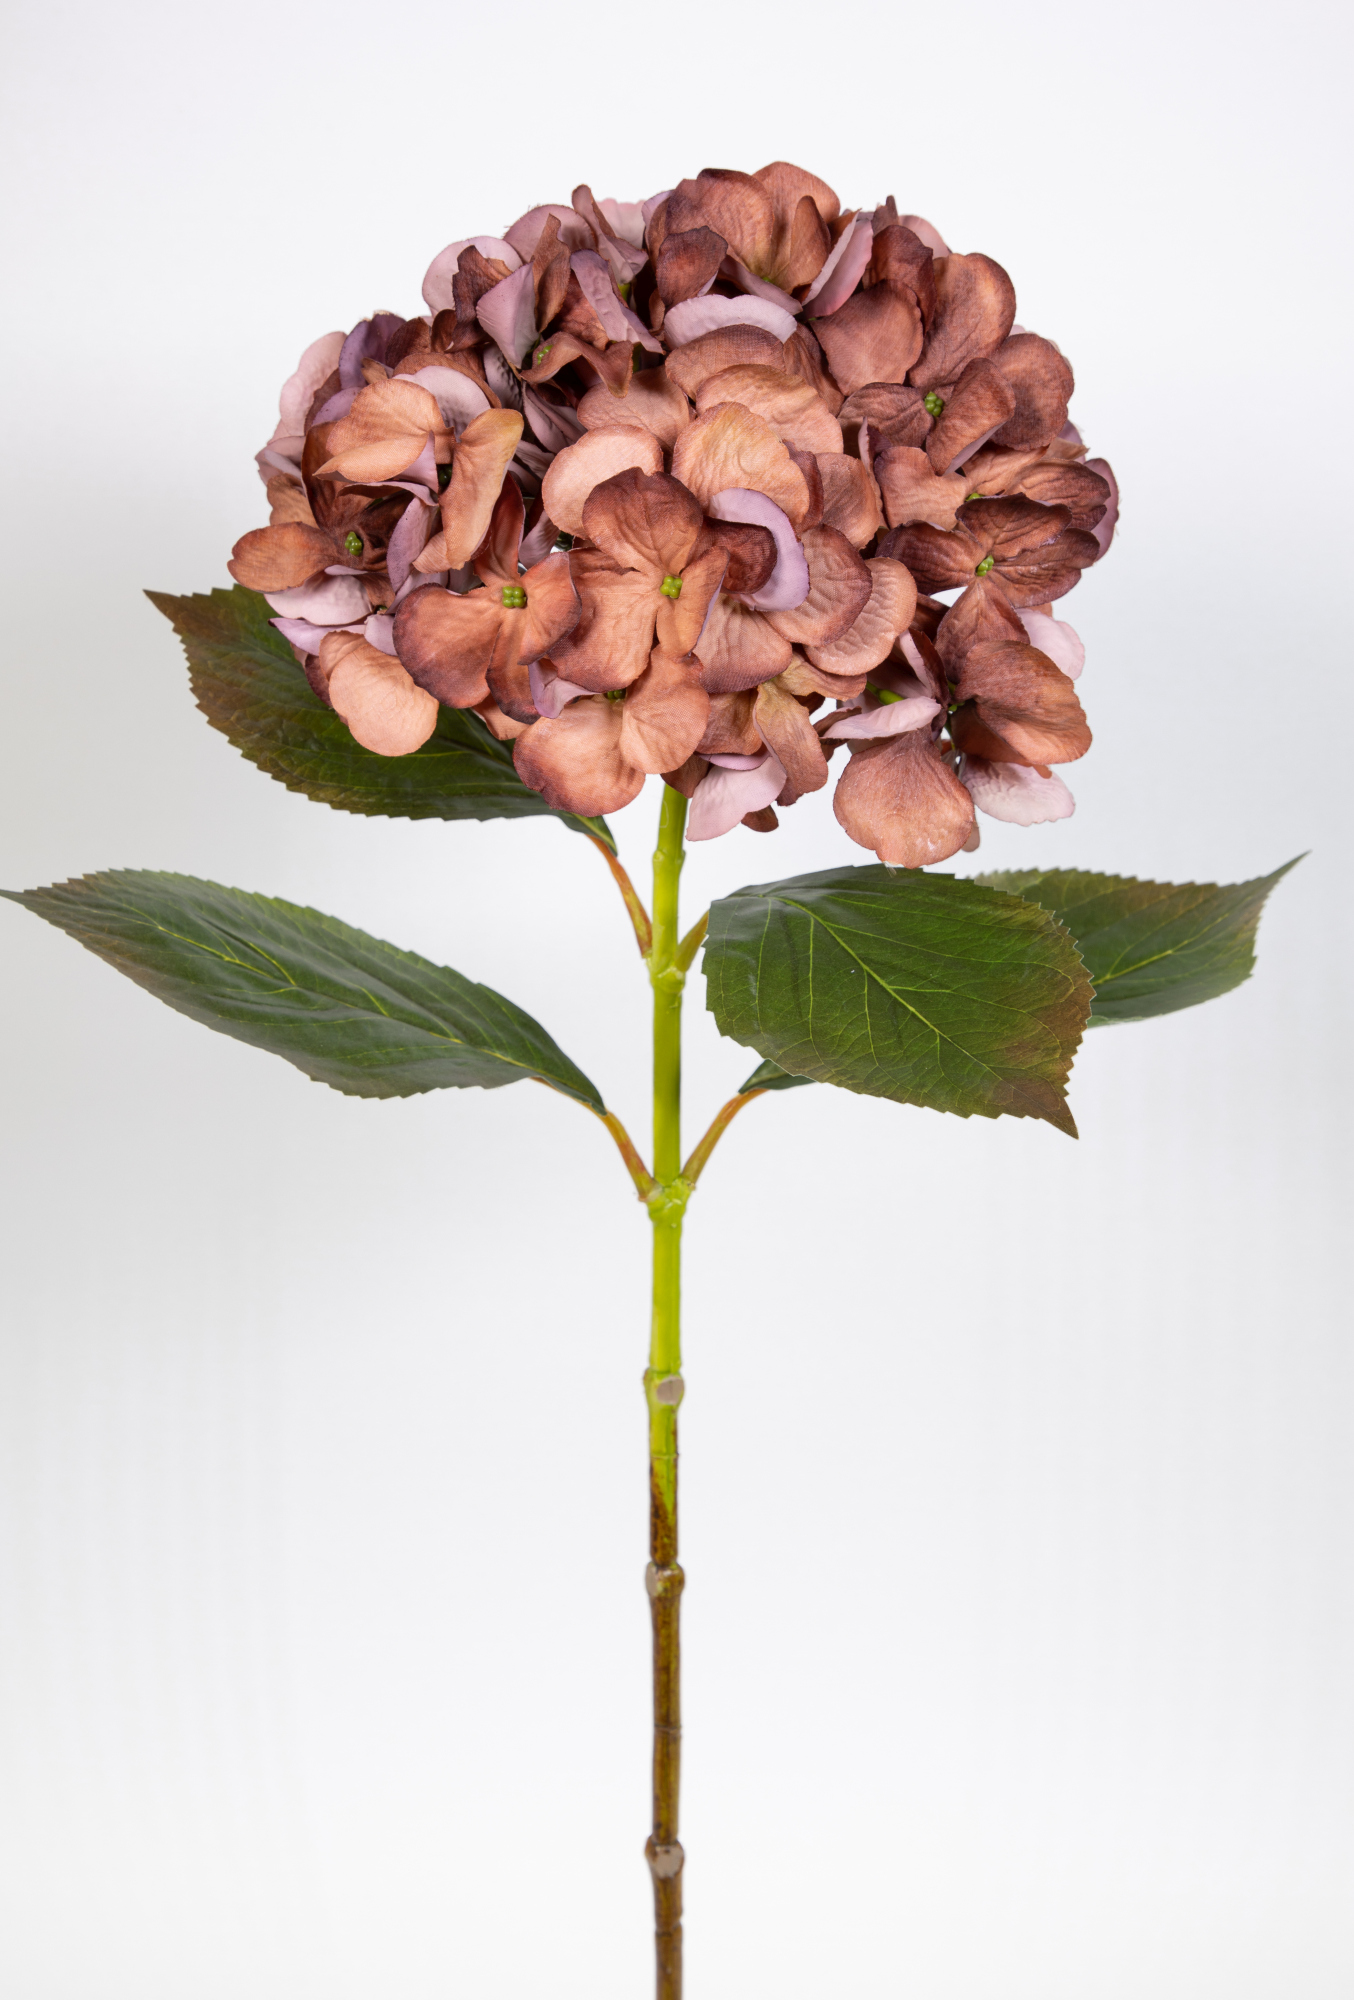 Hortensie 68cm braun-hellbraun GA Seidenblumen Kunstlbumen künstliche Blumen Hortensien Hydrangea